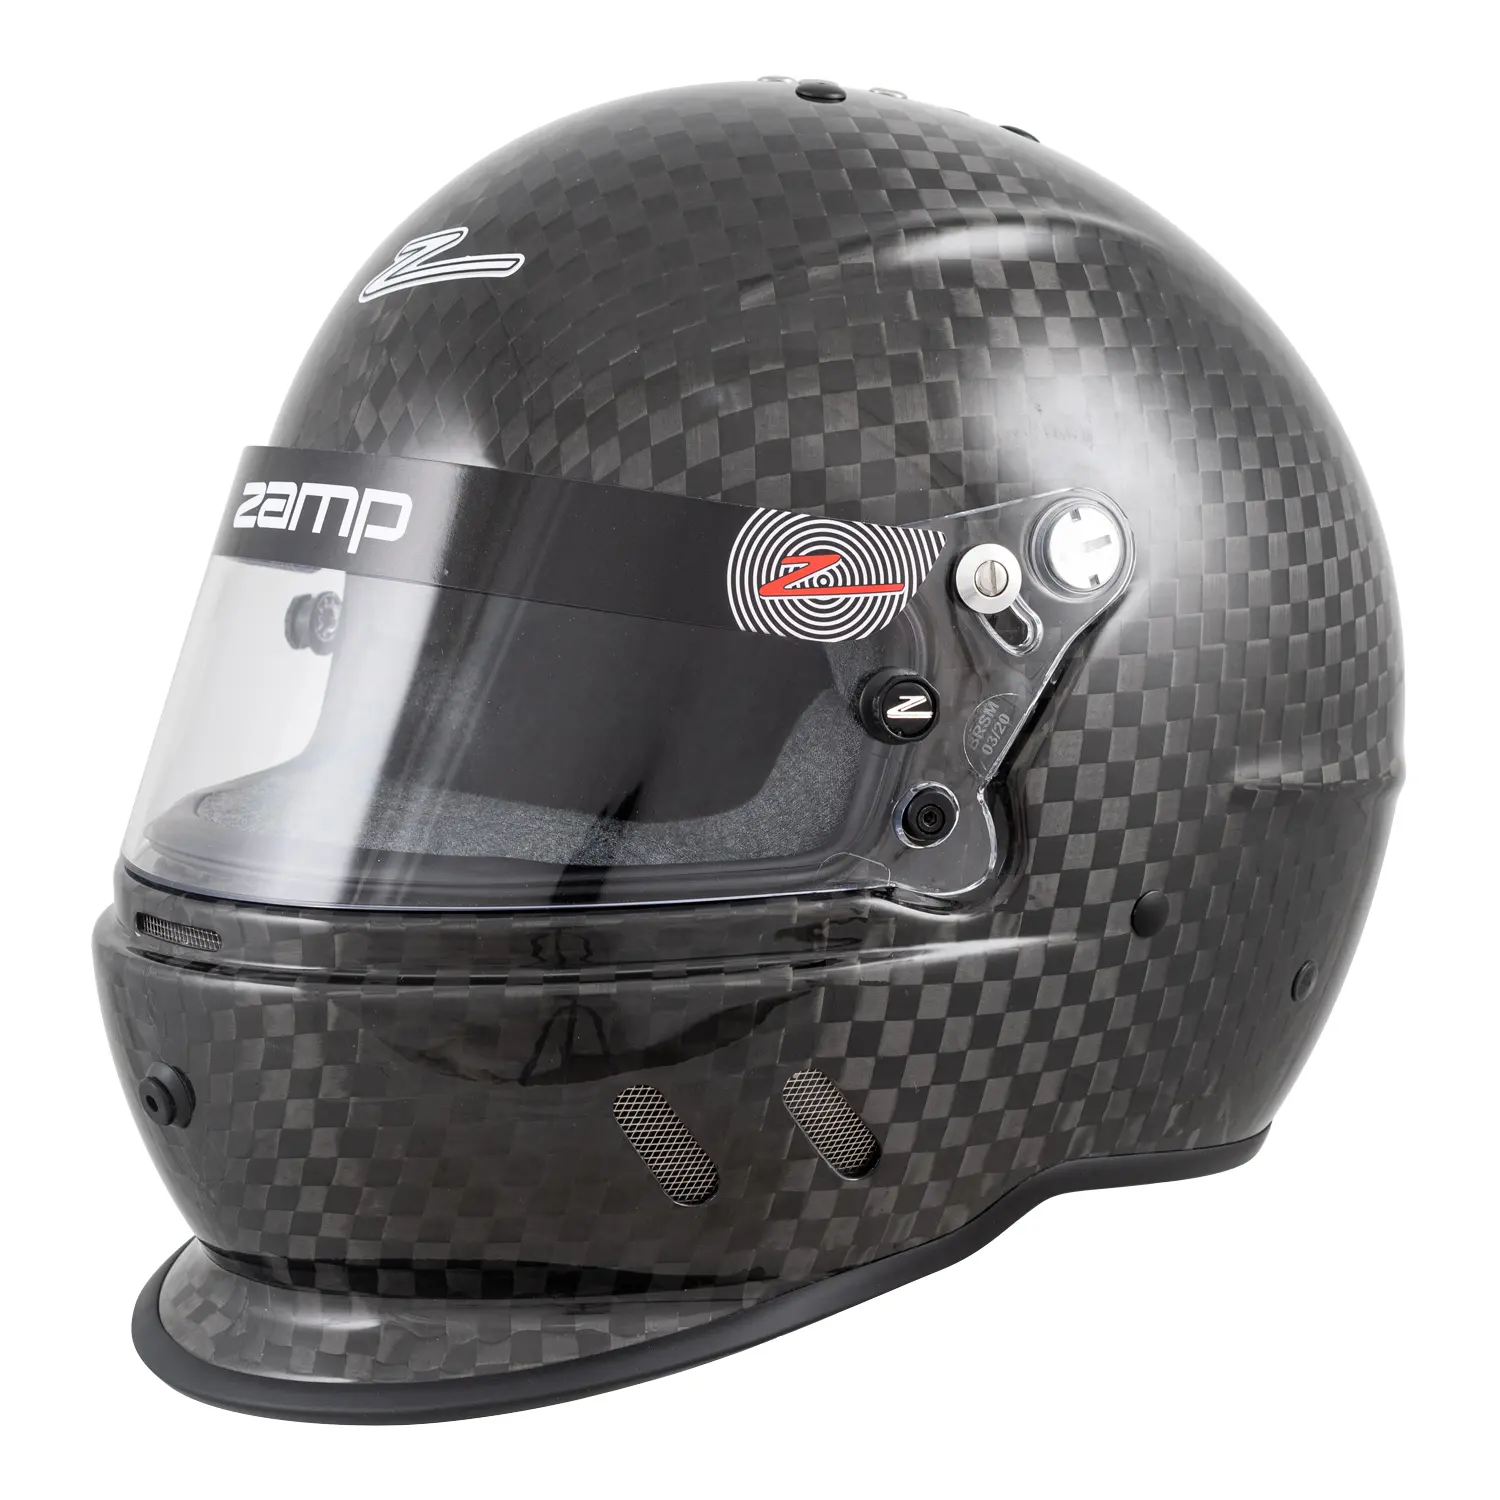 RZ-65D Helmet